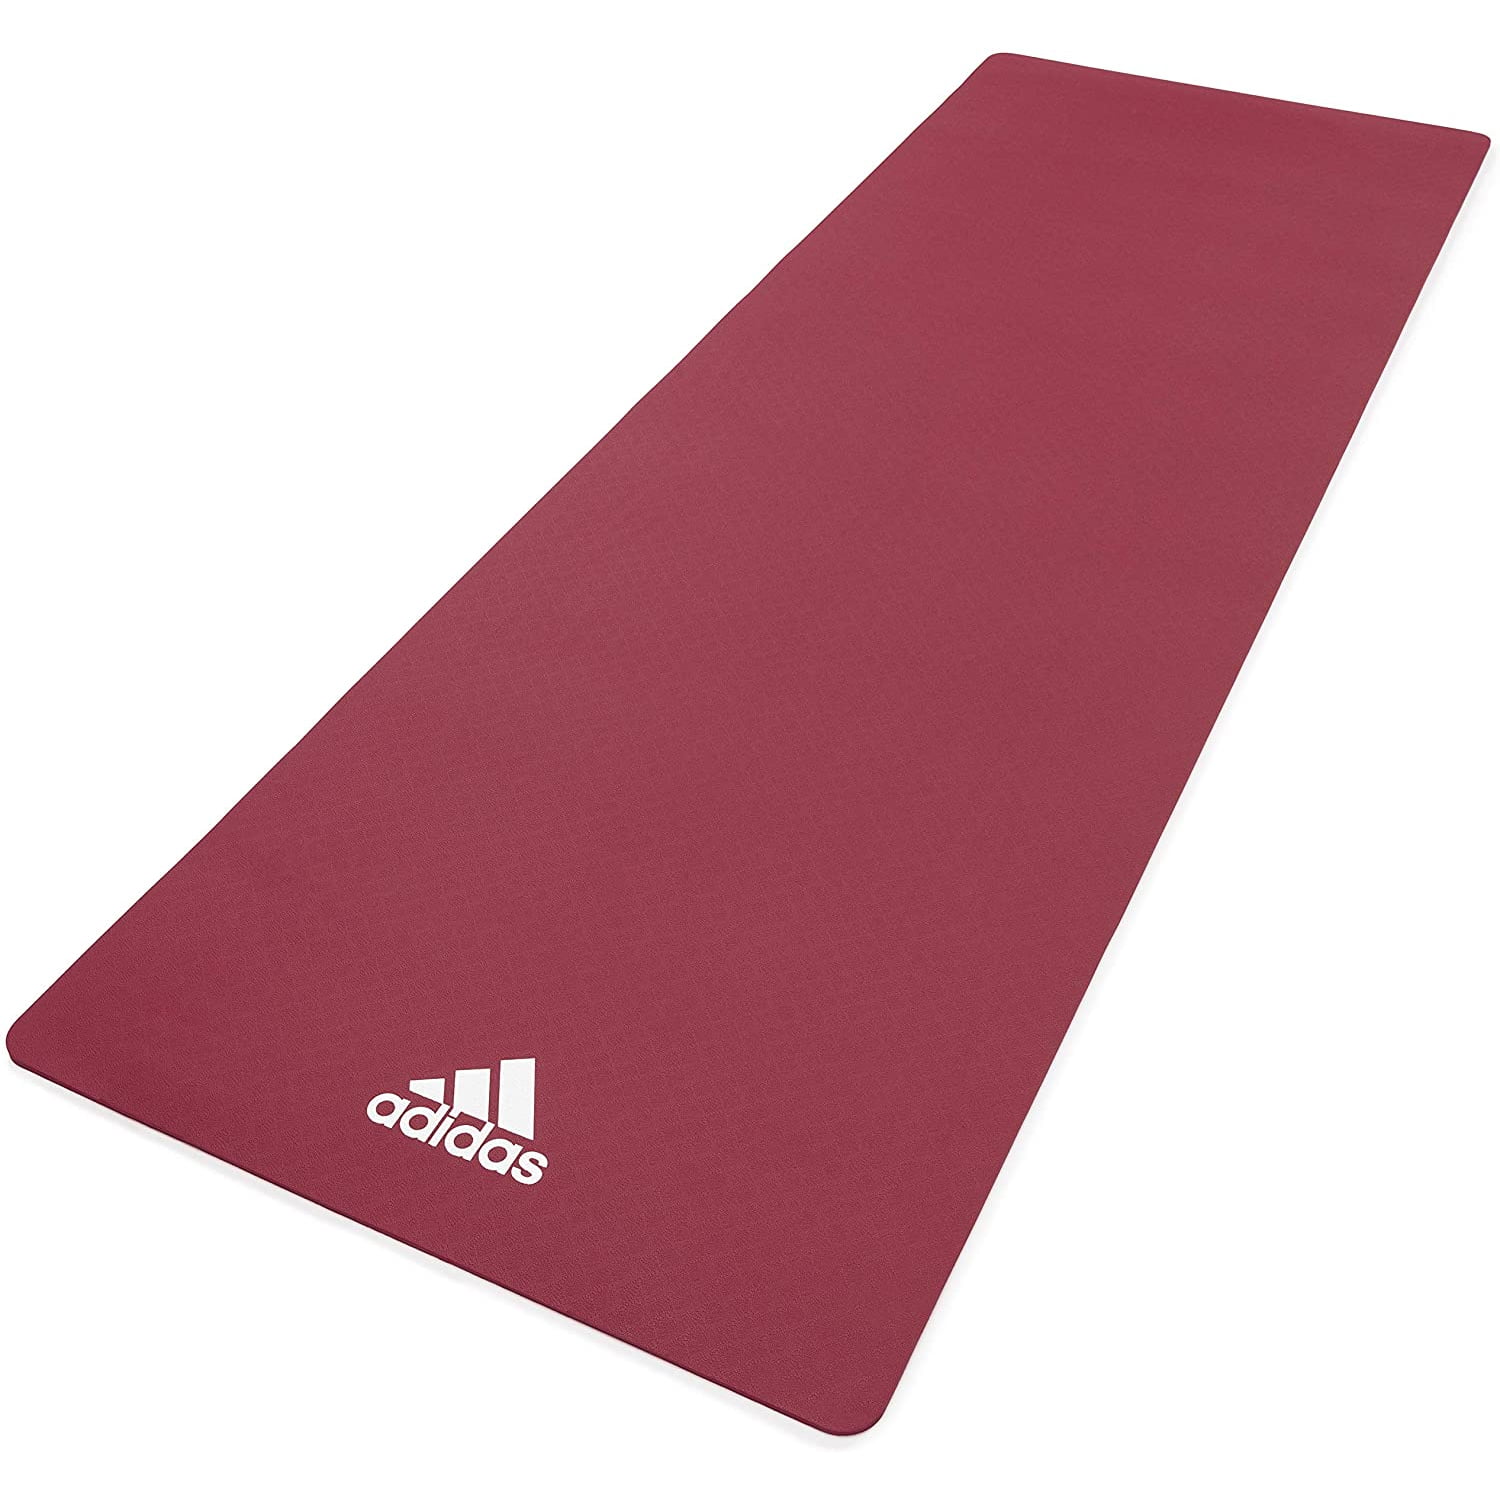 slip resistant yoga mat